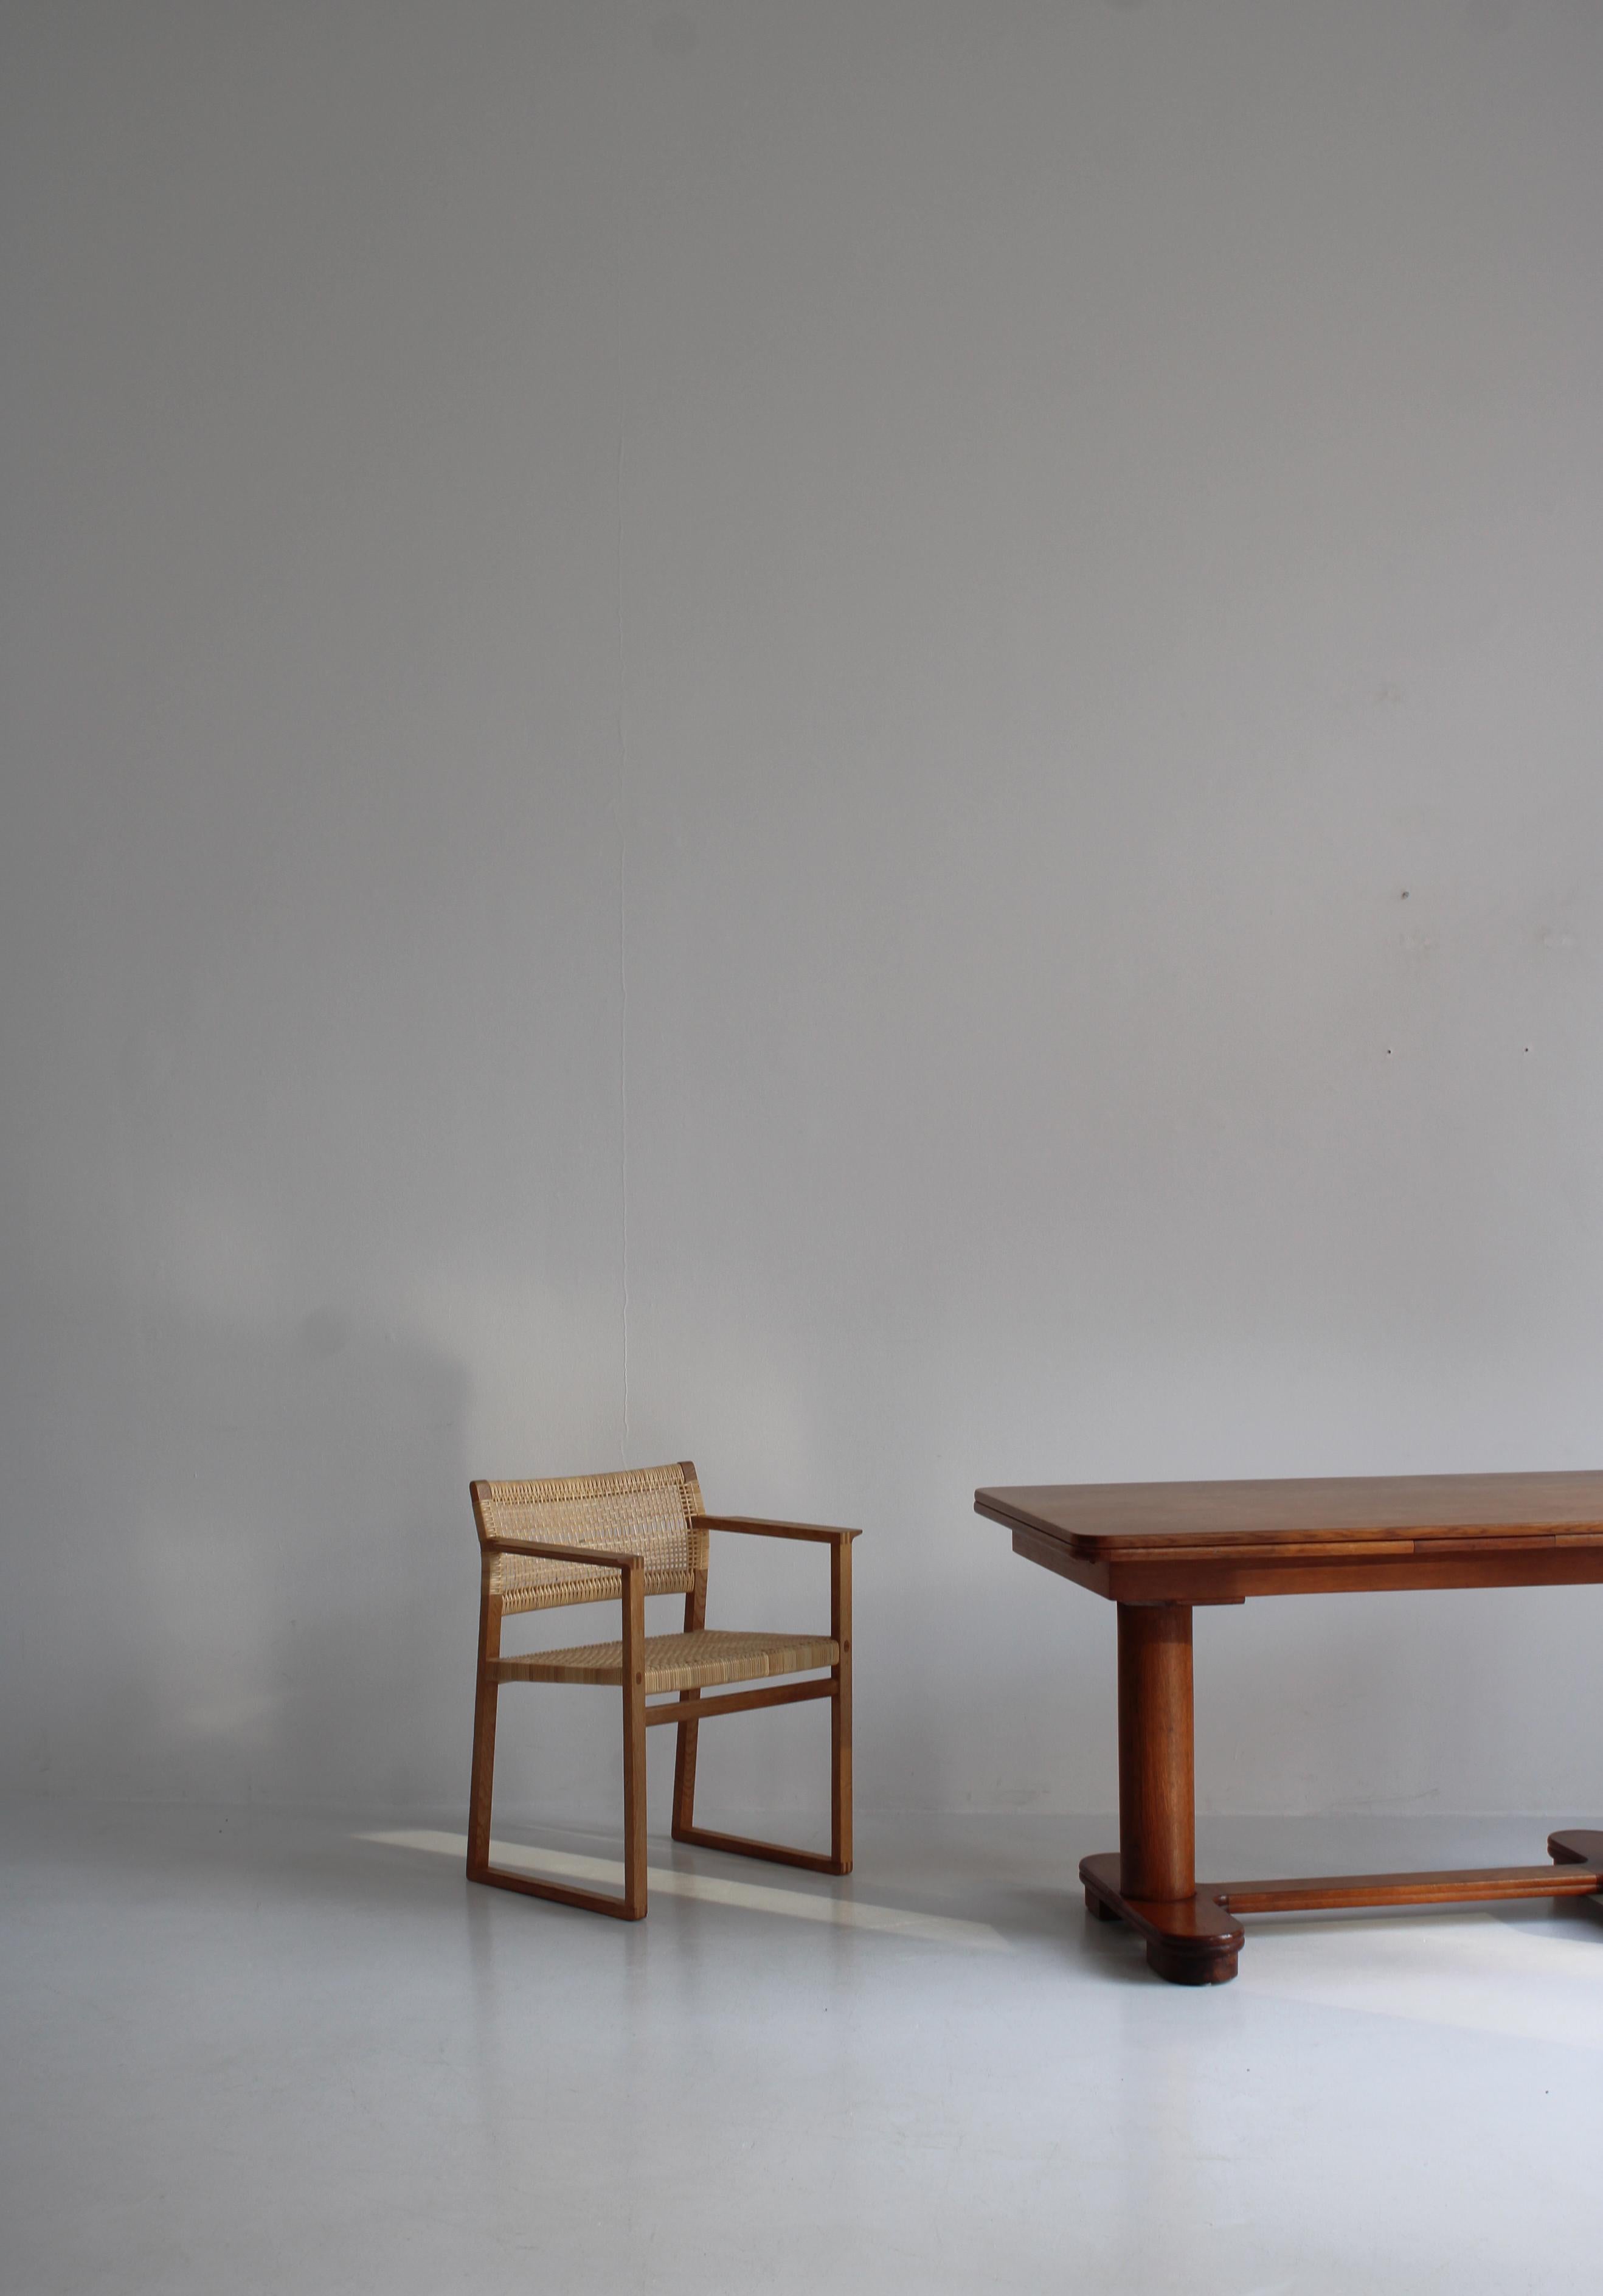 Atemberaubender Art-Déco-Tisch mit ausziehbarer Platte, hergestellt von einem dänischen Tischler in den 1930er Jahren. Der Tisch ist aus Eichenholz gefertigt und das Design ist einfach umwerfend. Wunderschöne klobige zylindrische Säulenbeine und